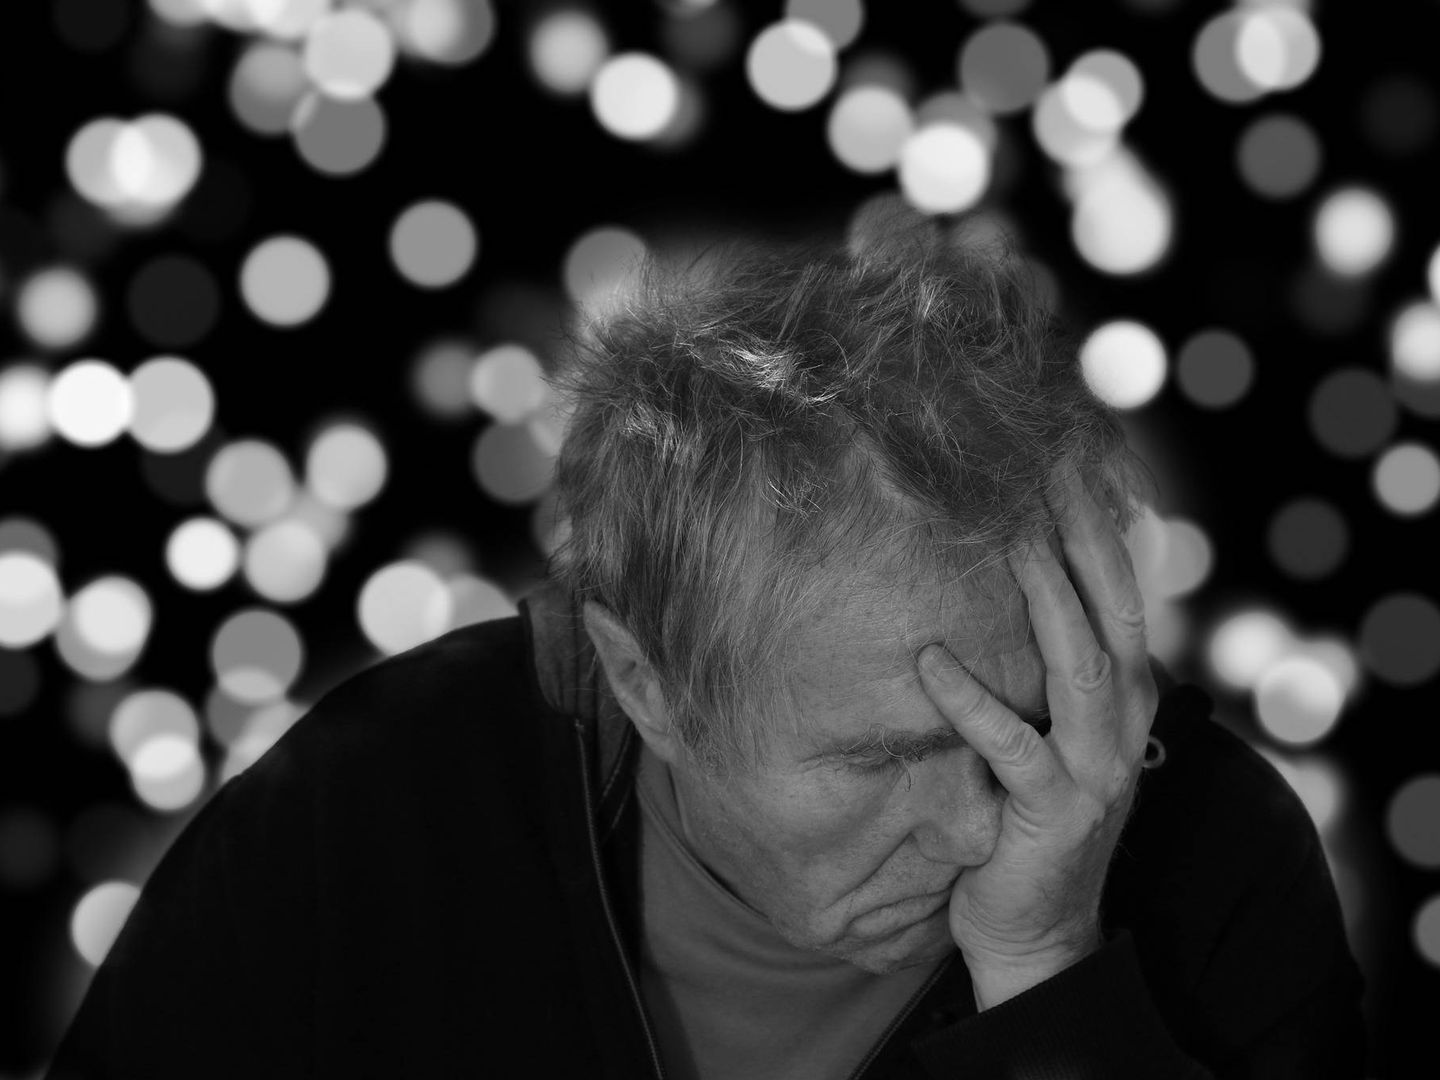 El alzhéimer afectará a más de 100 millones de personas en pocos años. (Pixabay)